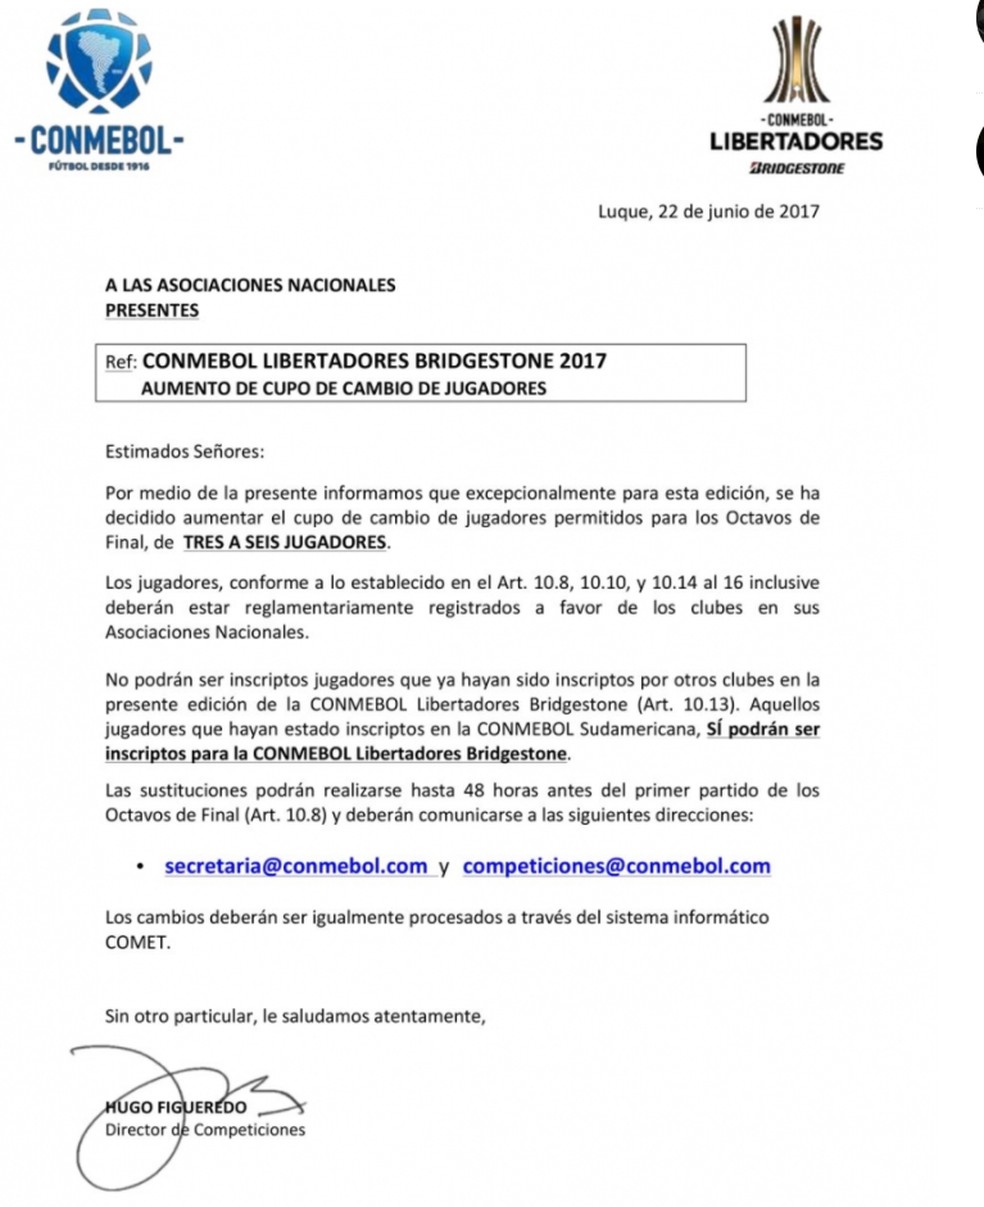 Comunicado da Conmebol anunciando mudanças no regulamento de inscrição de atletas (Foto: Reprodução)